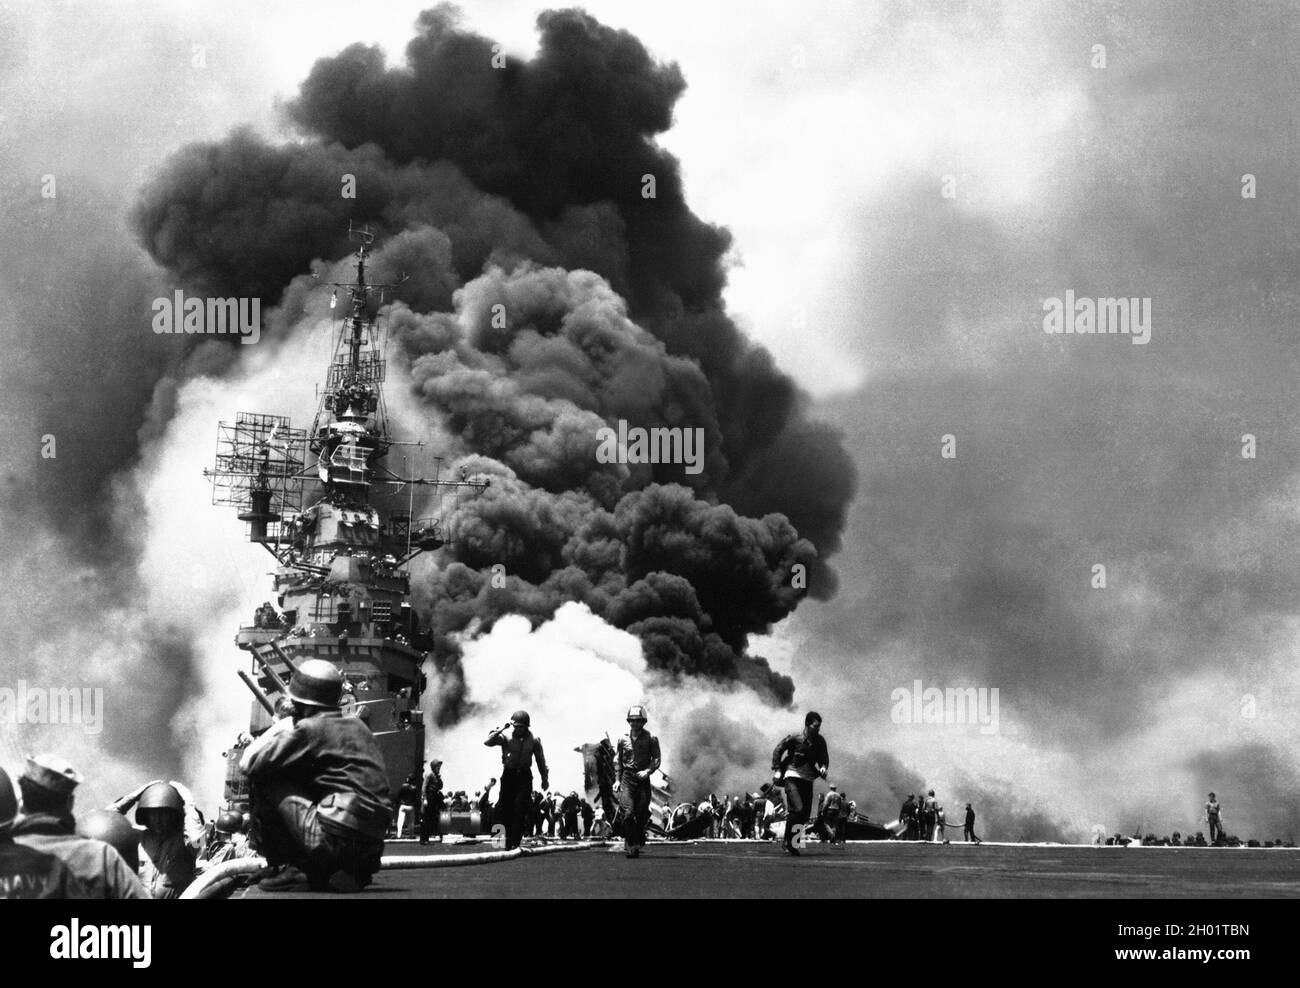 Il vettore statunitense USS Bunker Hill è stato colpito da due kamikazes in 30 secondi il 11 maggio 1945 al largo di Kyushu. 372 furono uccisi e 264 feriti. Foto Stock